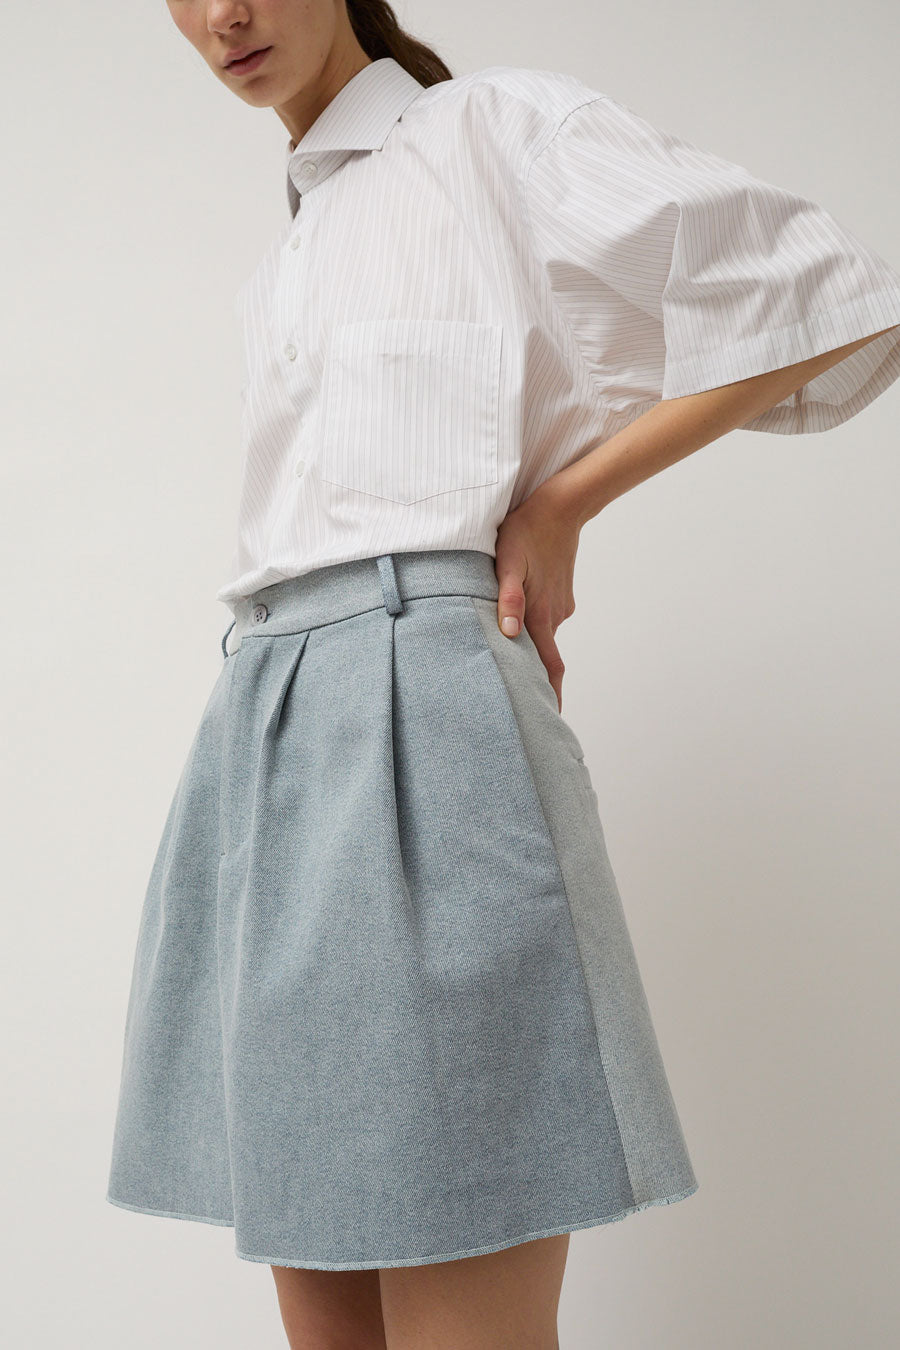 Highlight Studio Denim Pleats Skirt in Nostalgic Blue